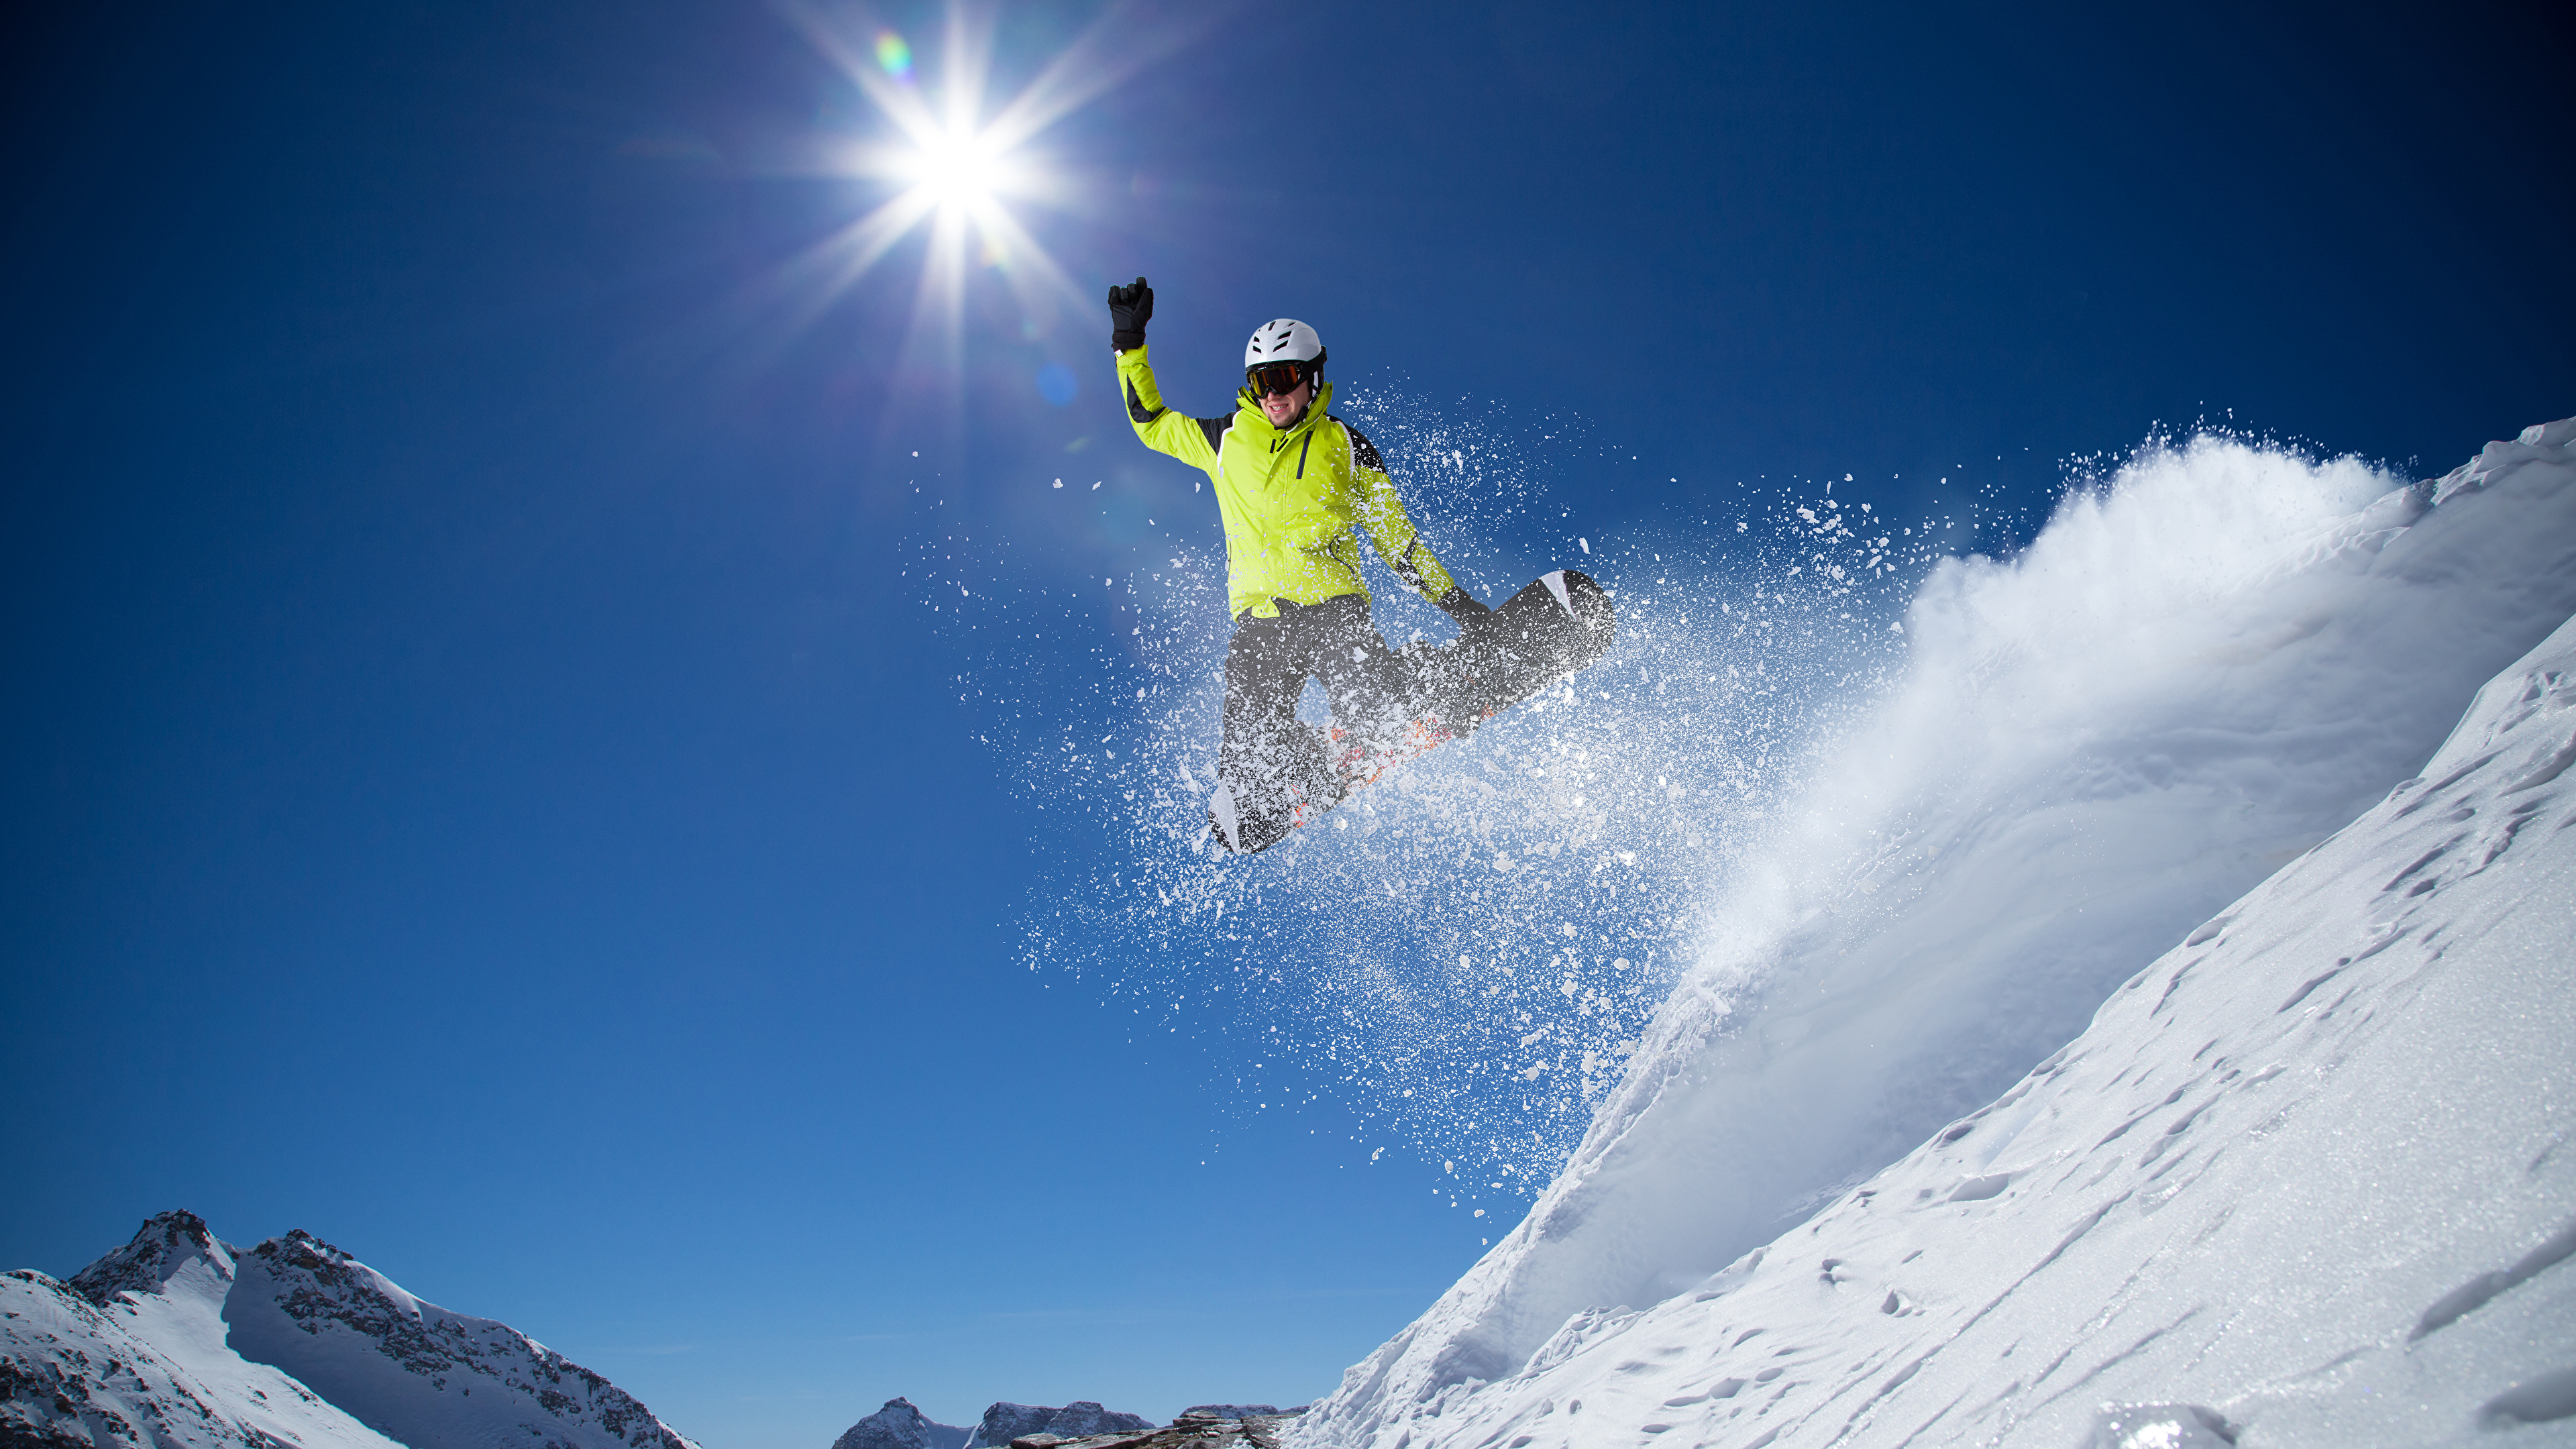 壁紙 3840x2160 冬 スキー スノーボード 飛び 雪 太陽 スポーツ ダウンロード 写真